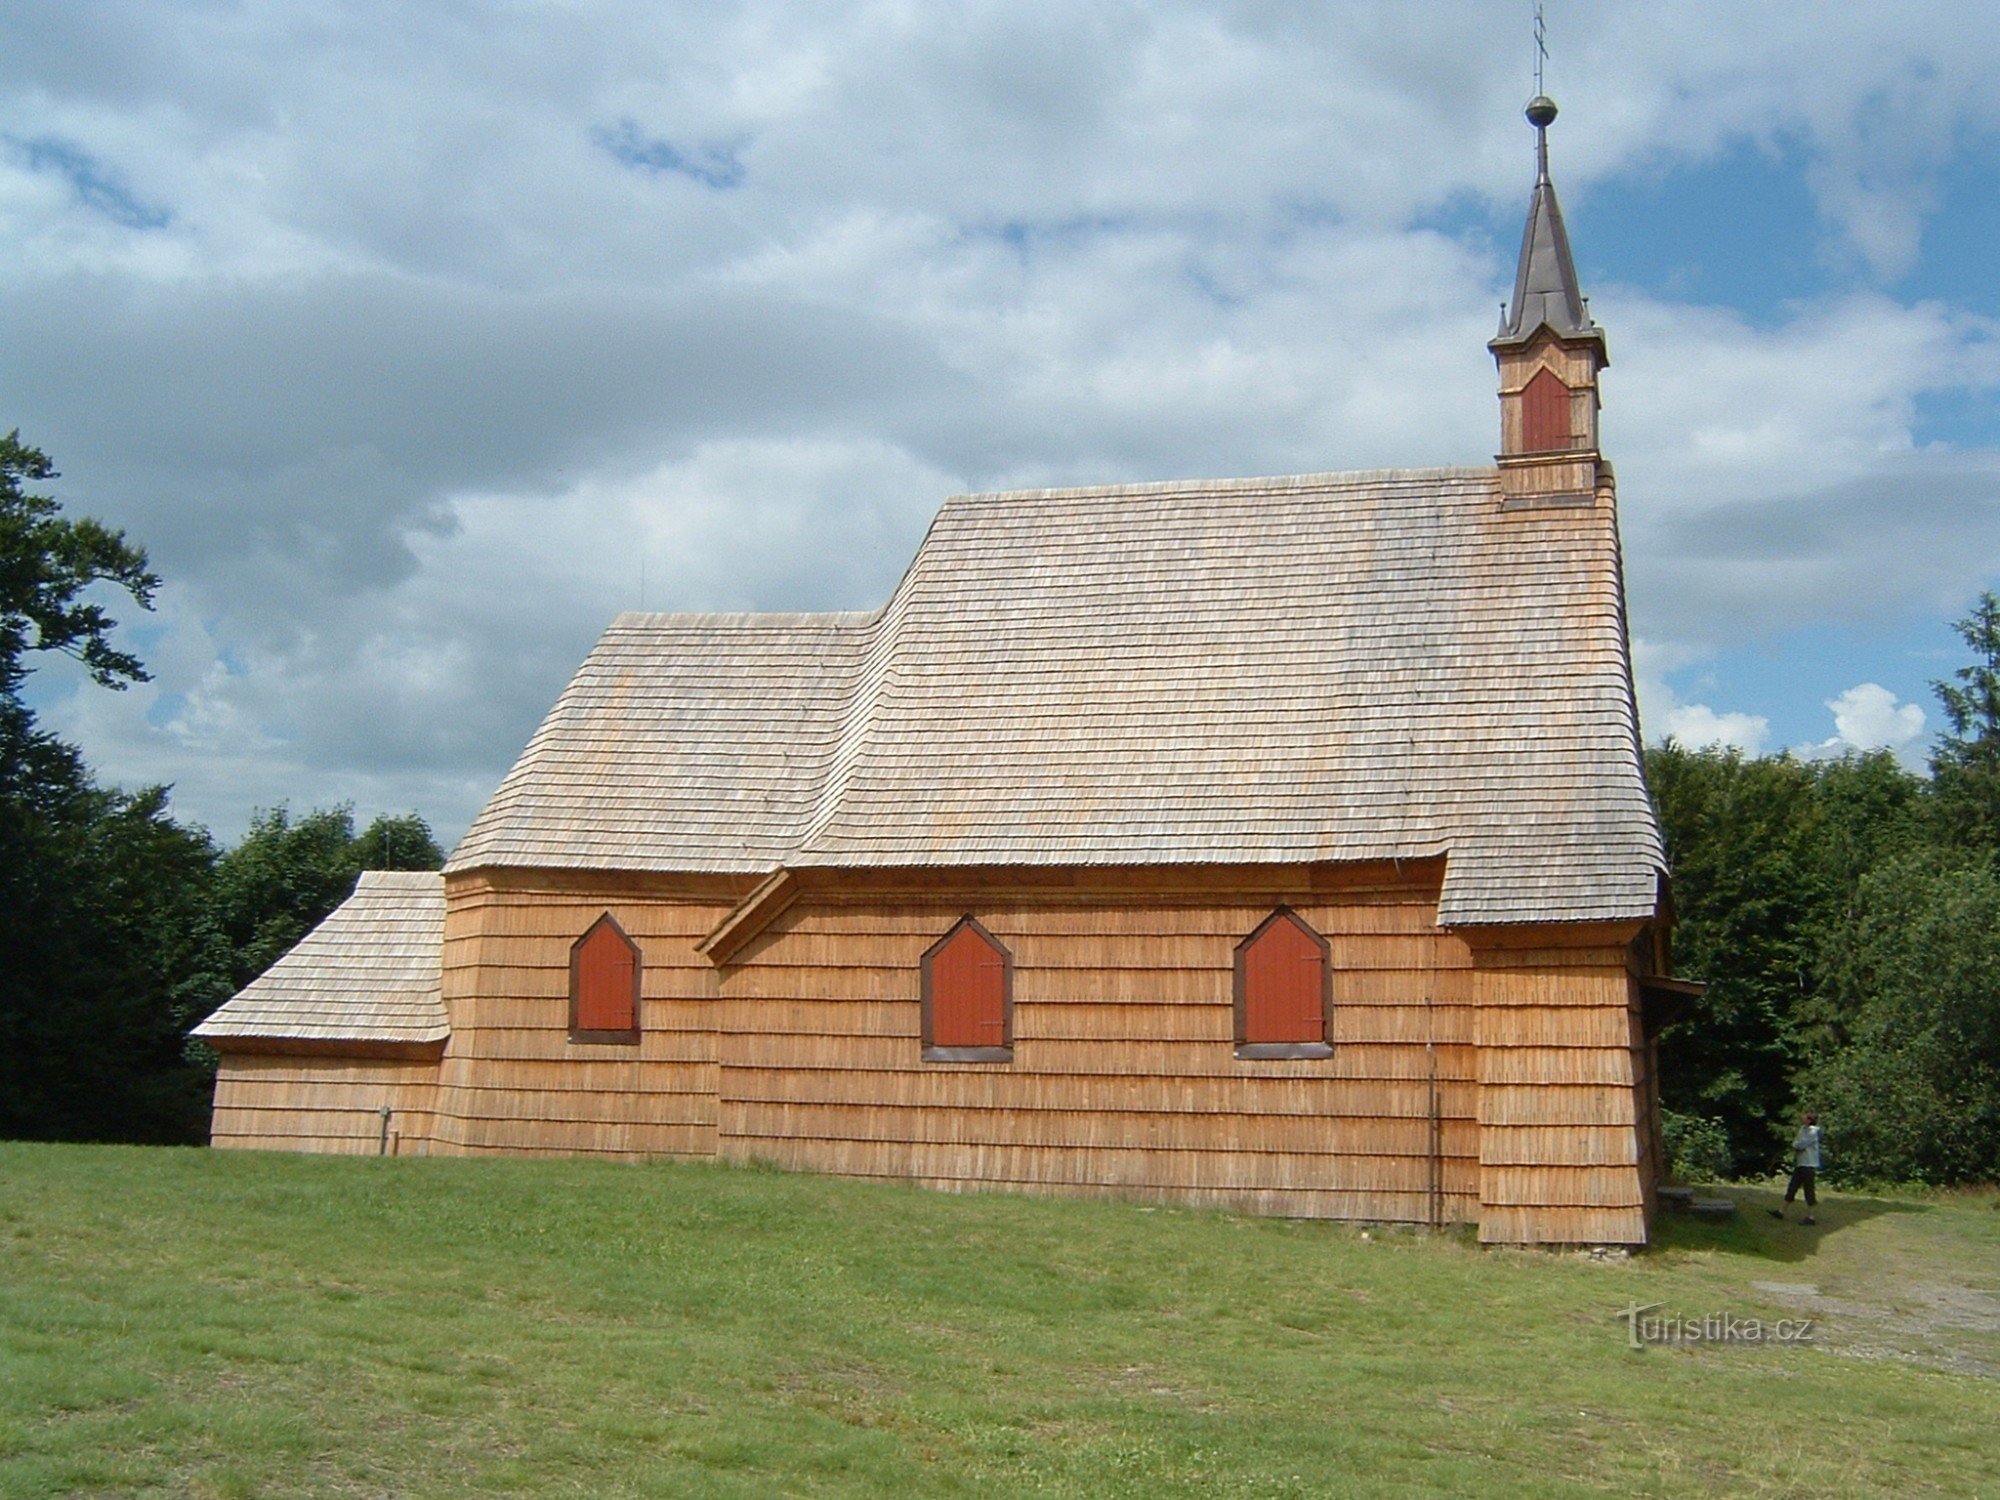 Деревянная церковь Святого Антония